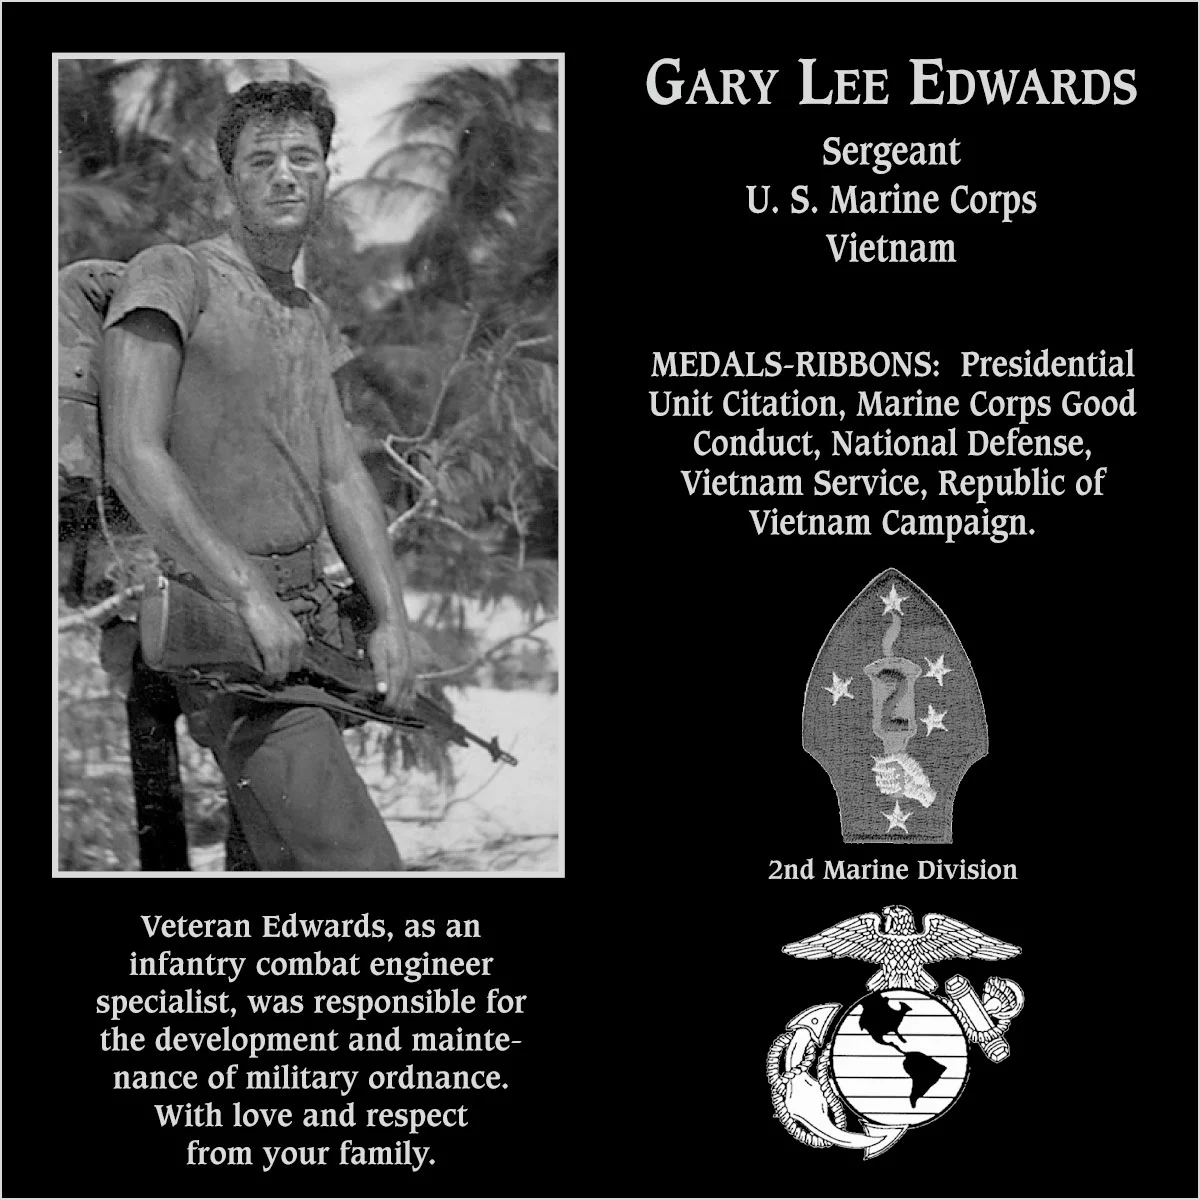 Gary Lee Edwards